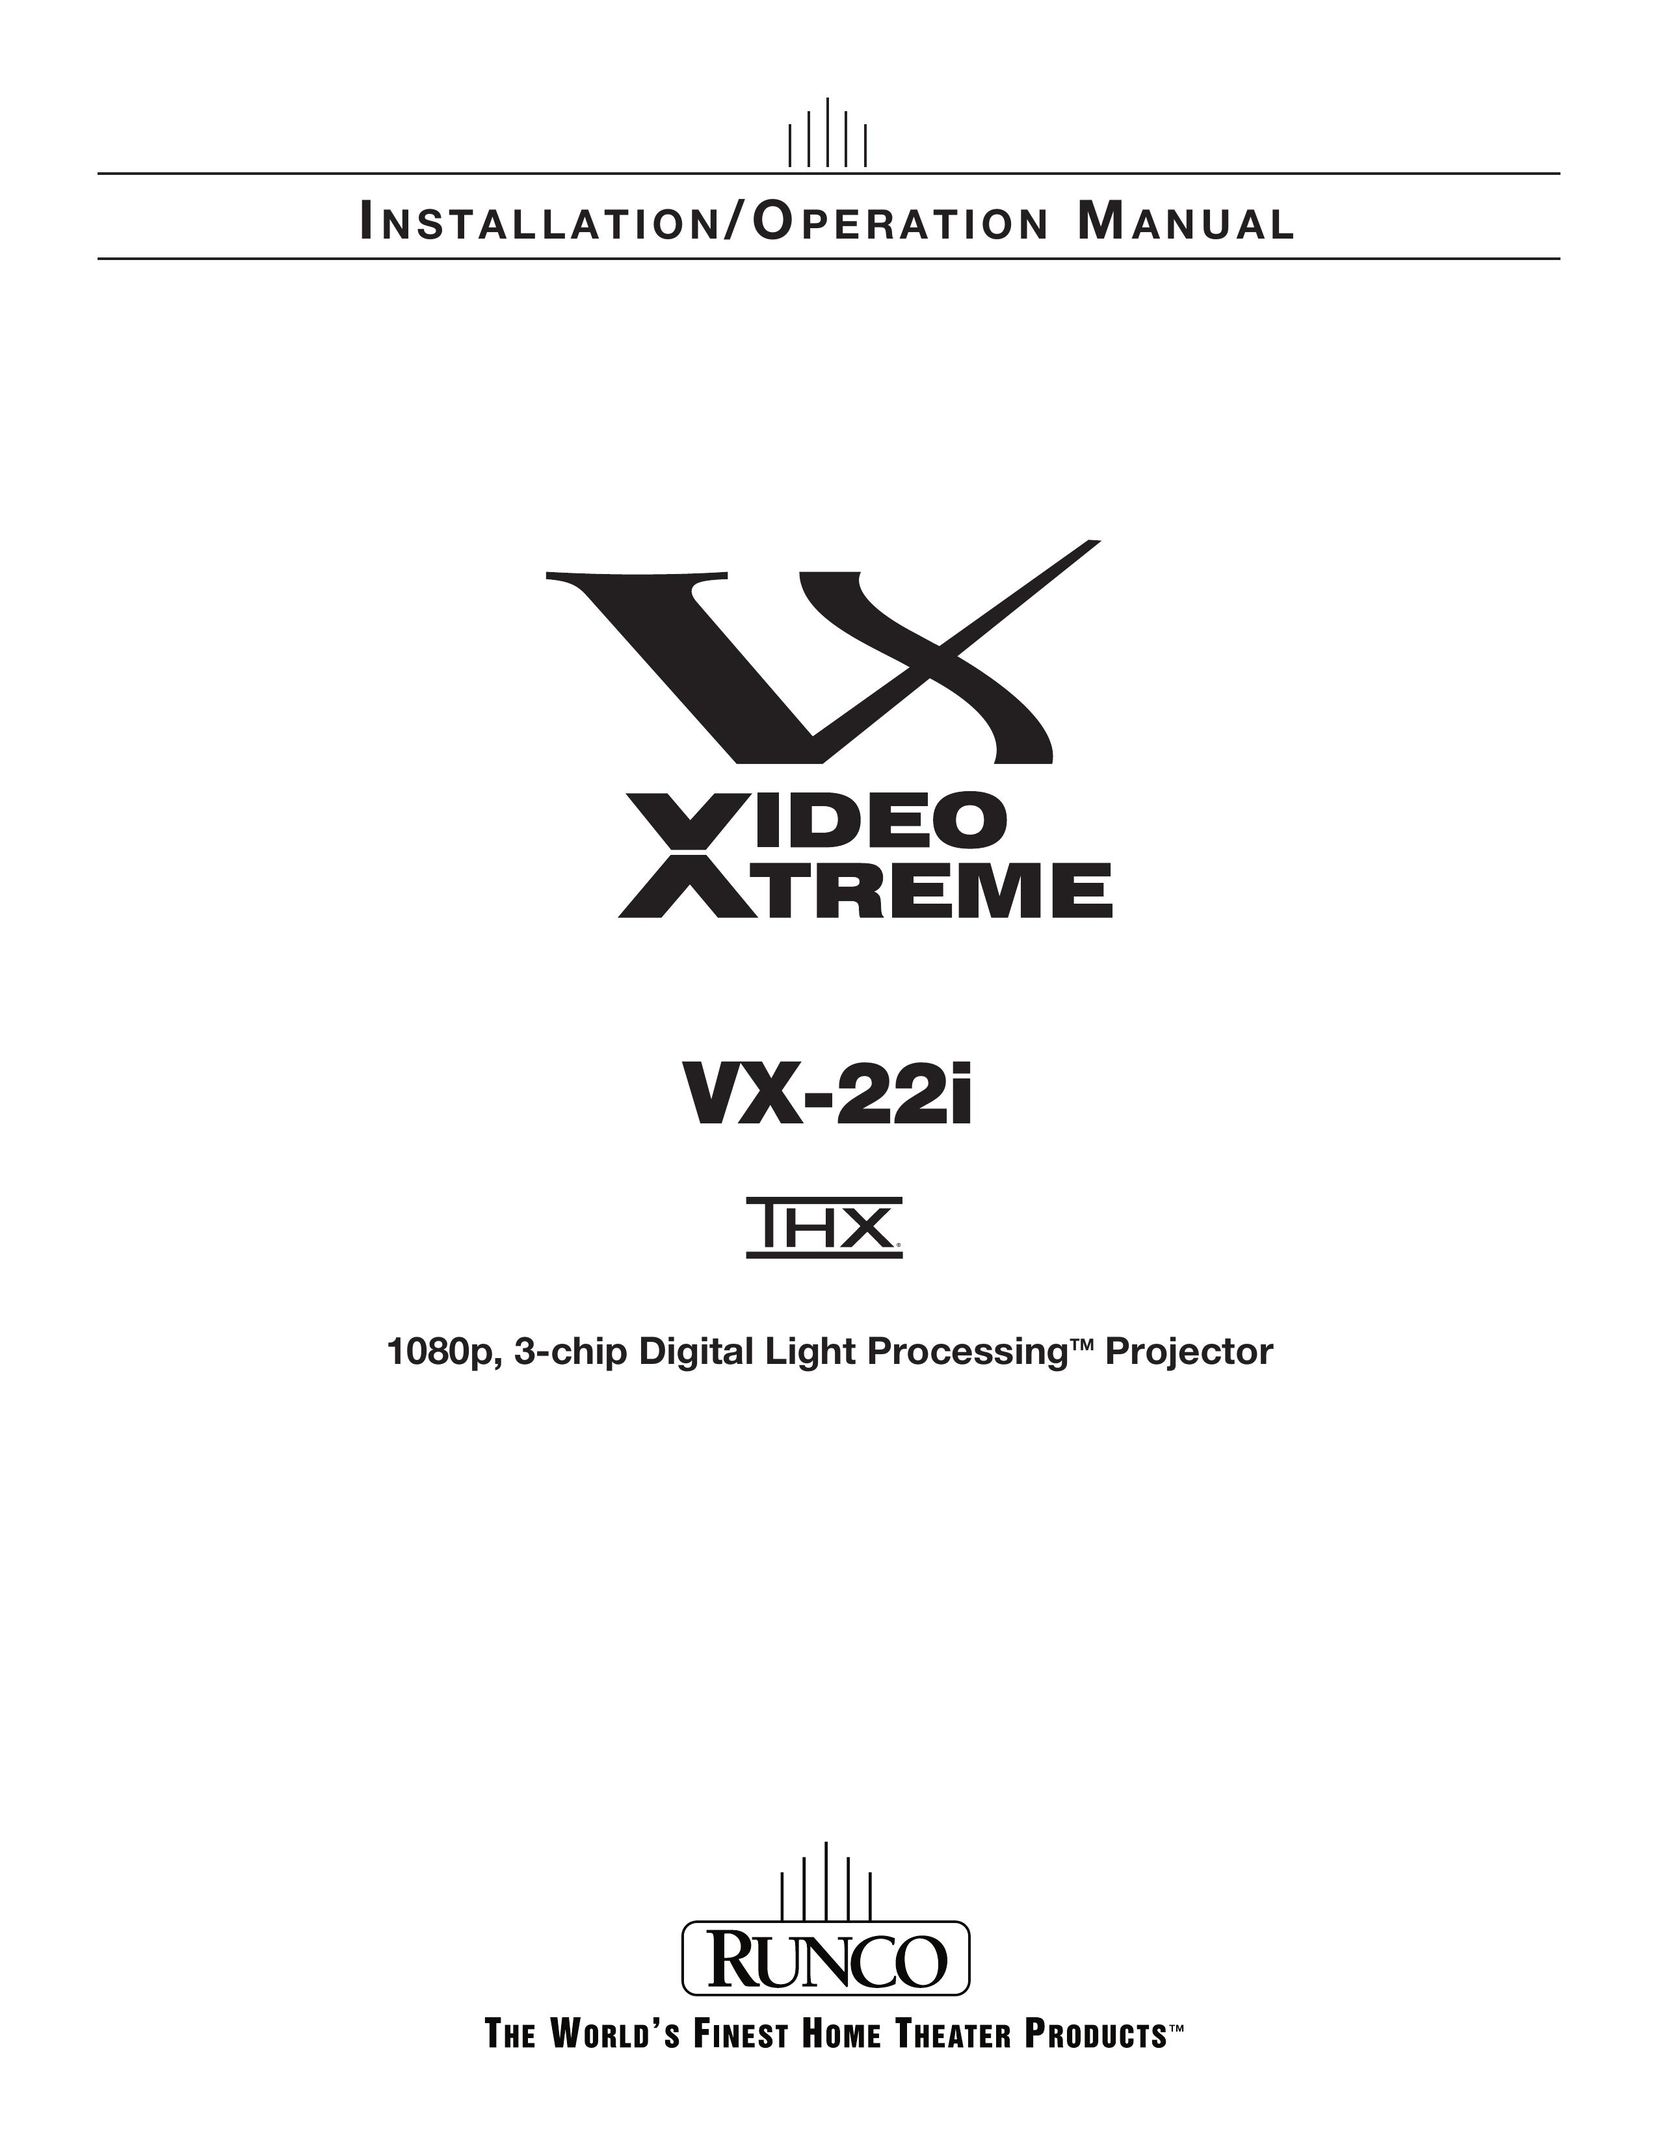 Runco VX-22I Projector User Manual